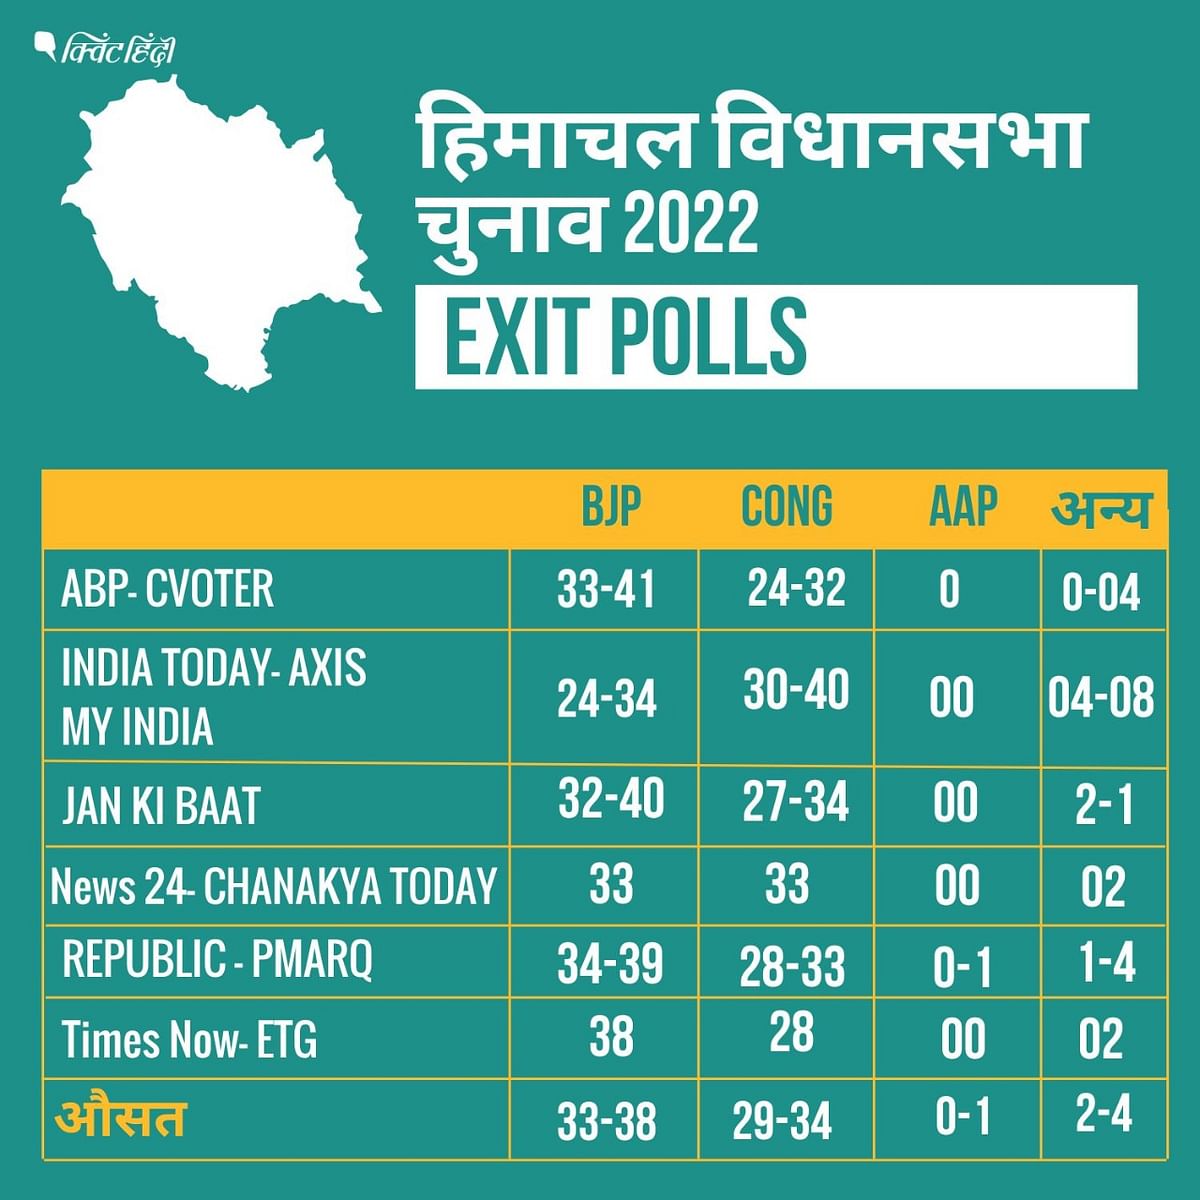 Himachal Exit Polls का एवरेज निकालें तो बीजेपी को 33-38 सीटें मिल सकती हैं, कांग्रेस को 29-34, अन्य को 2-4 